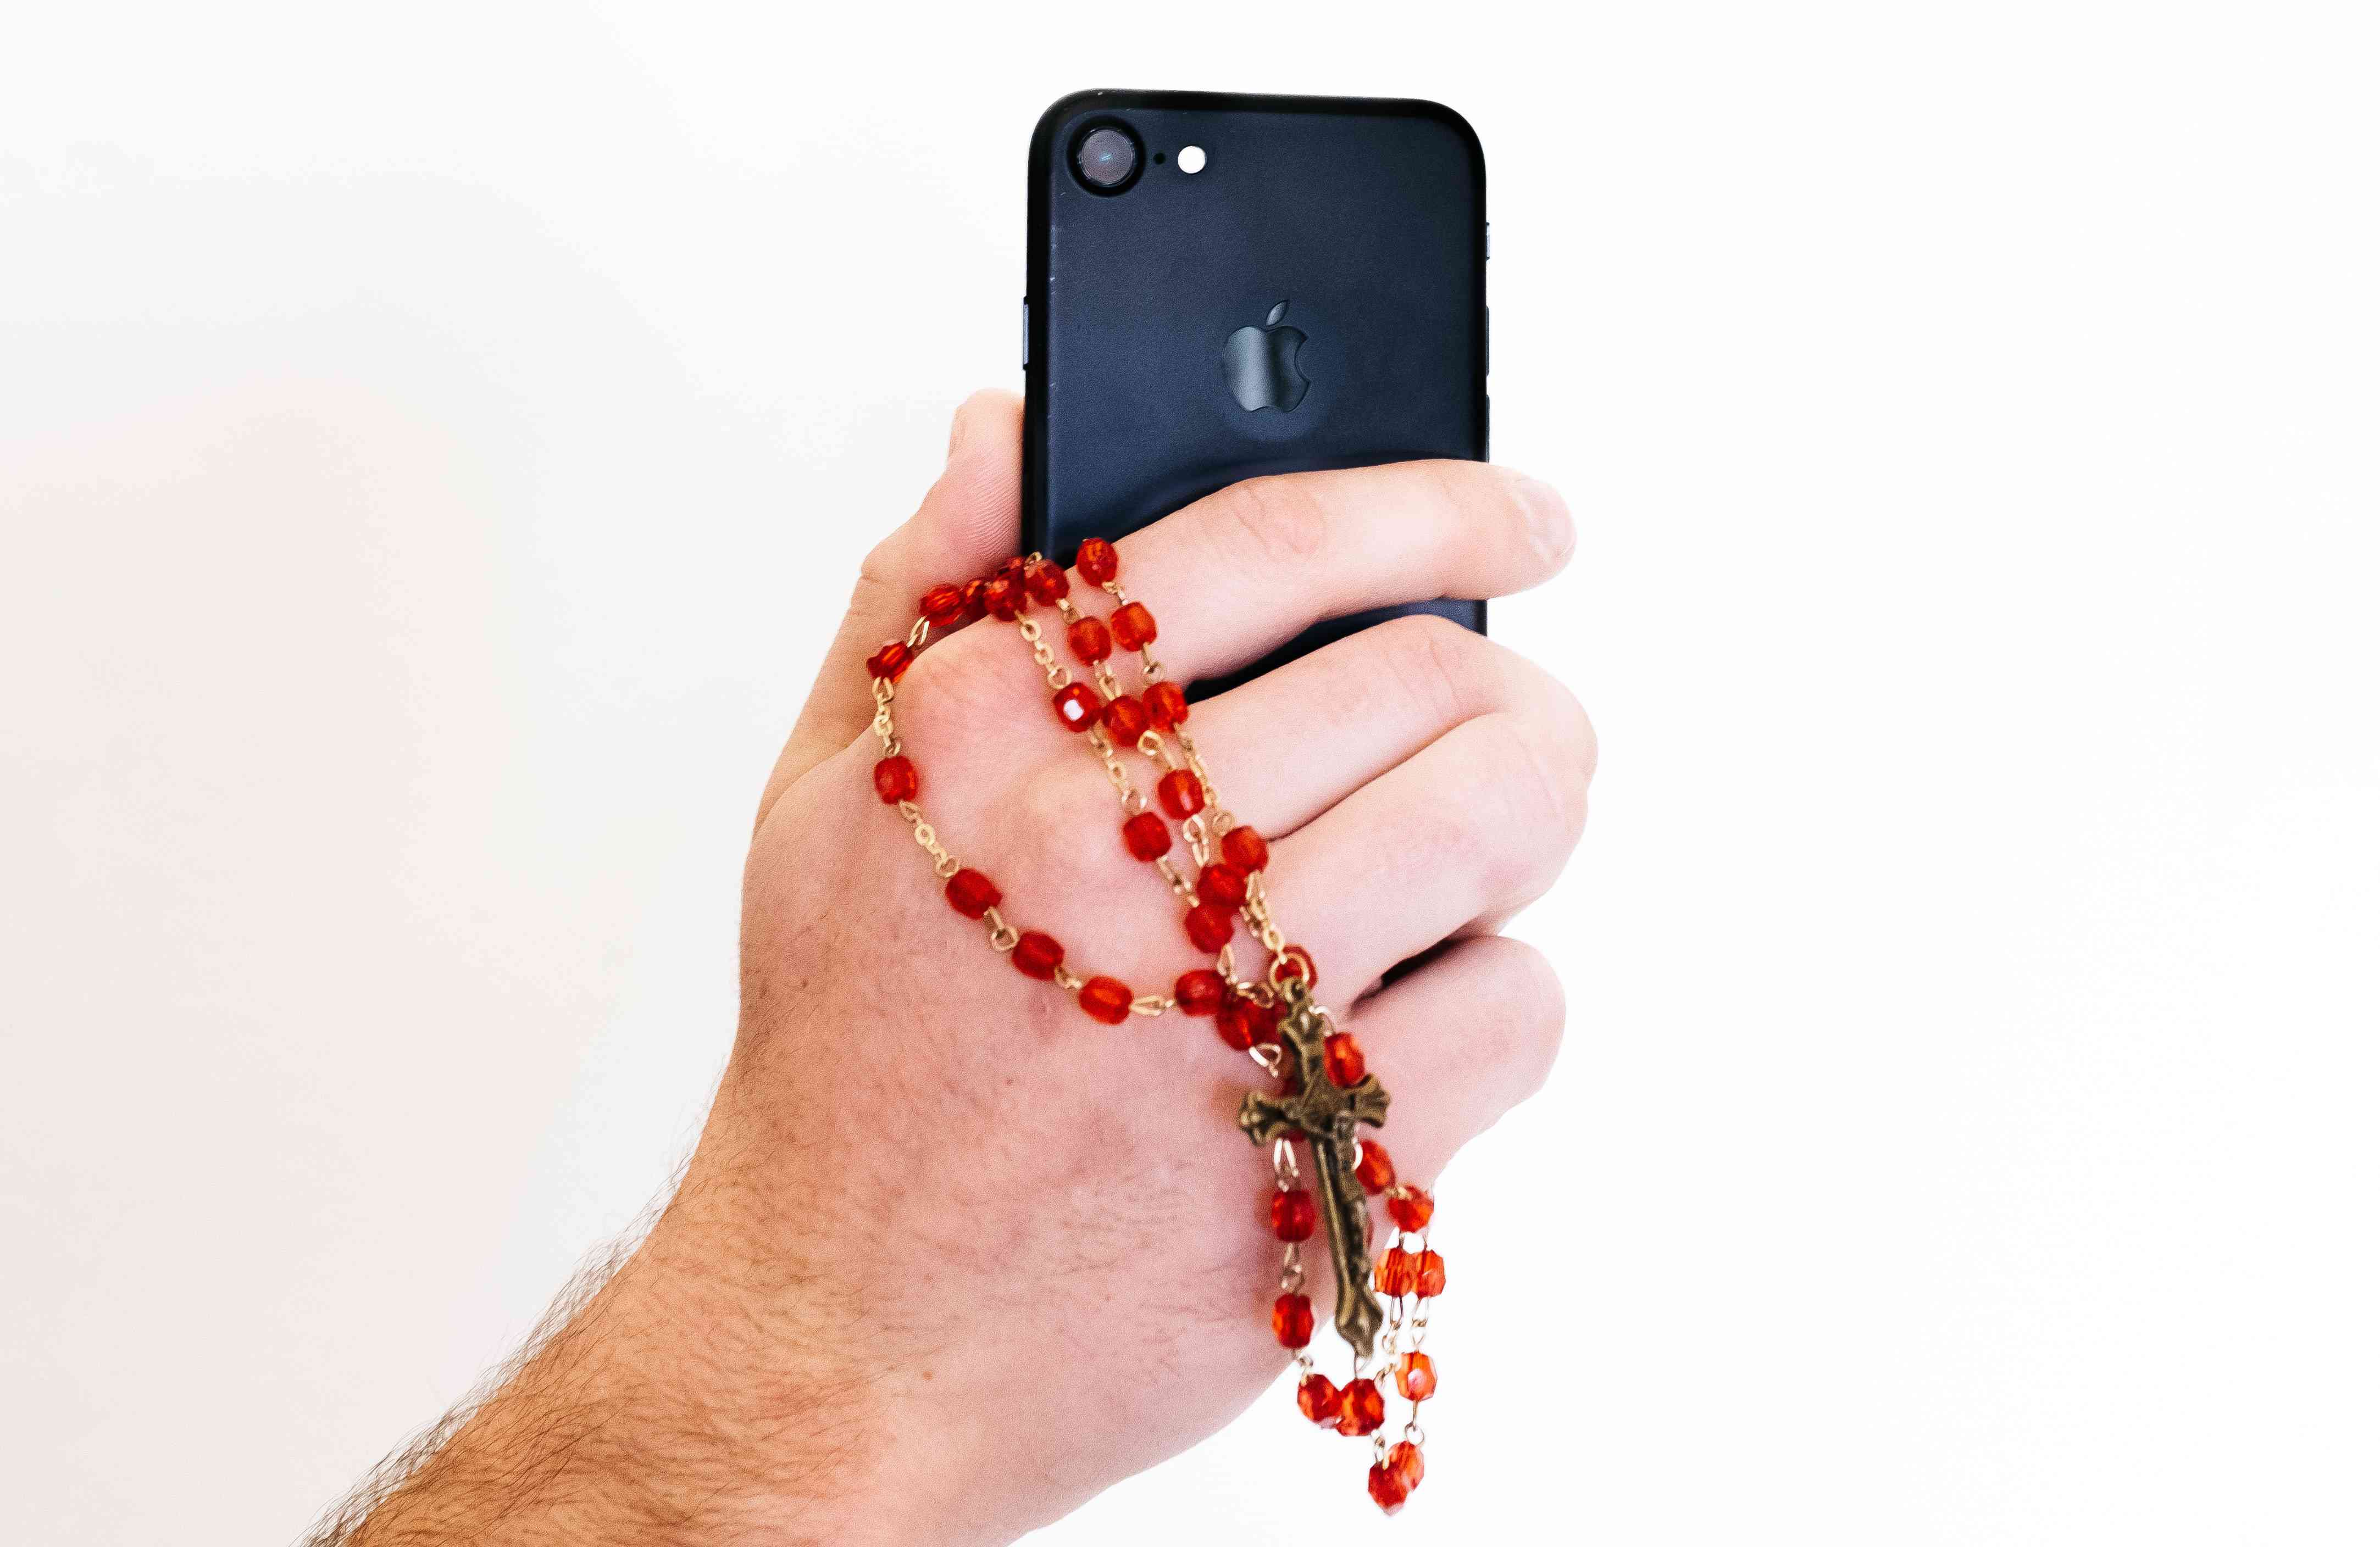 Een close-up van een hand met een smartphone en een rozenkrans.